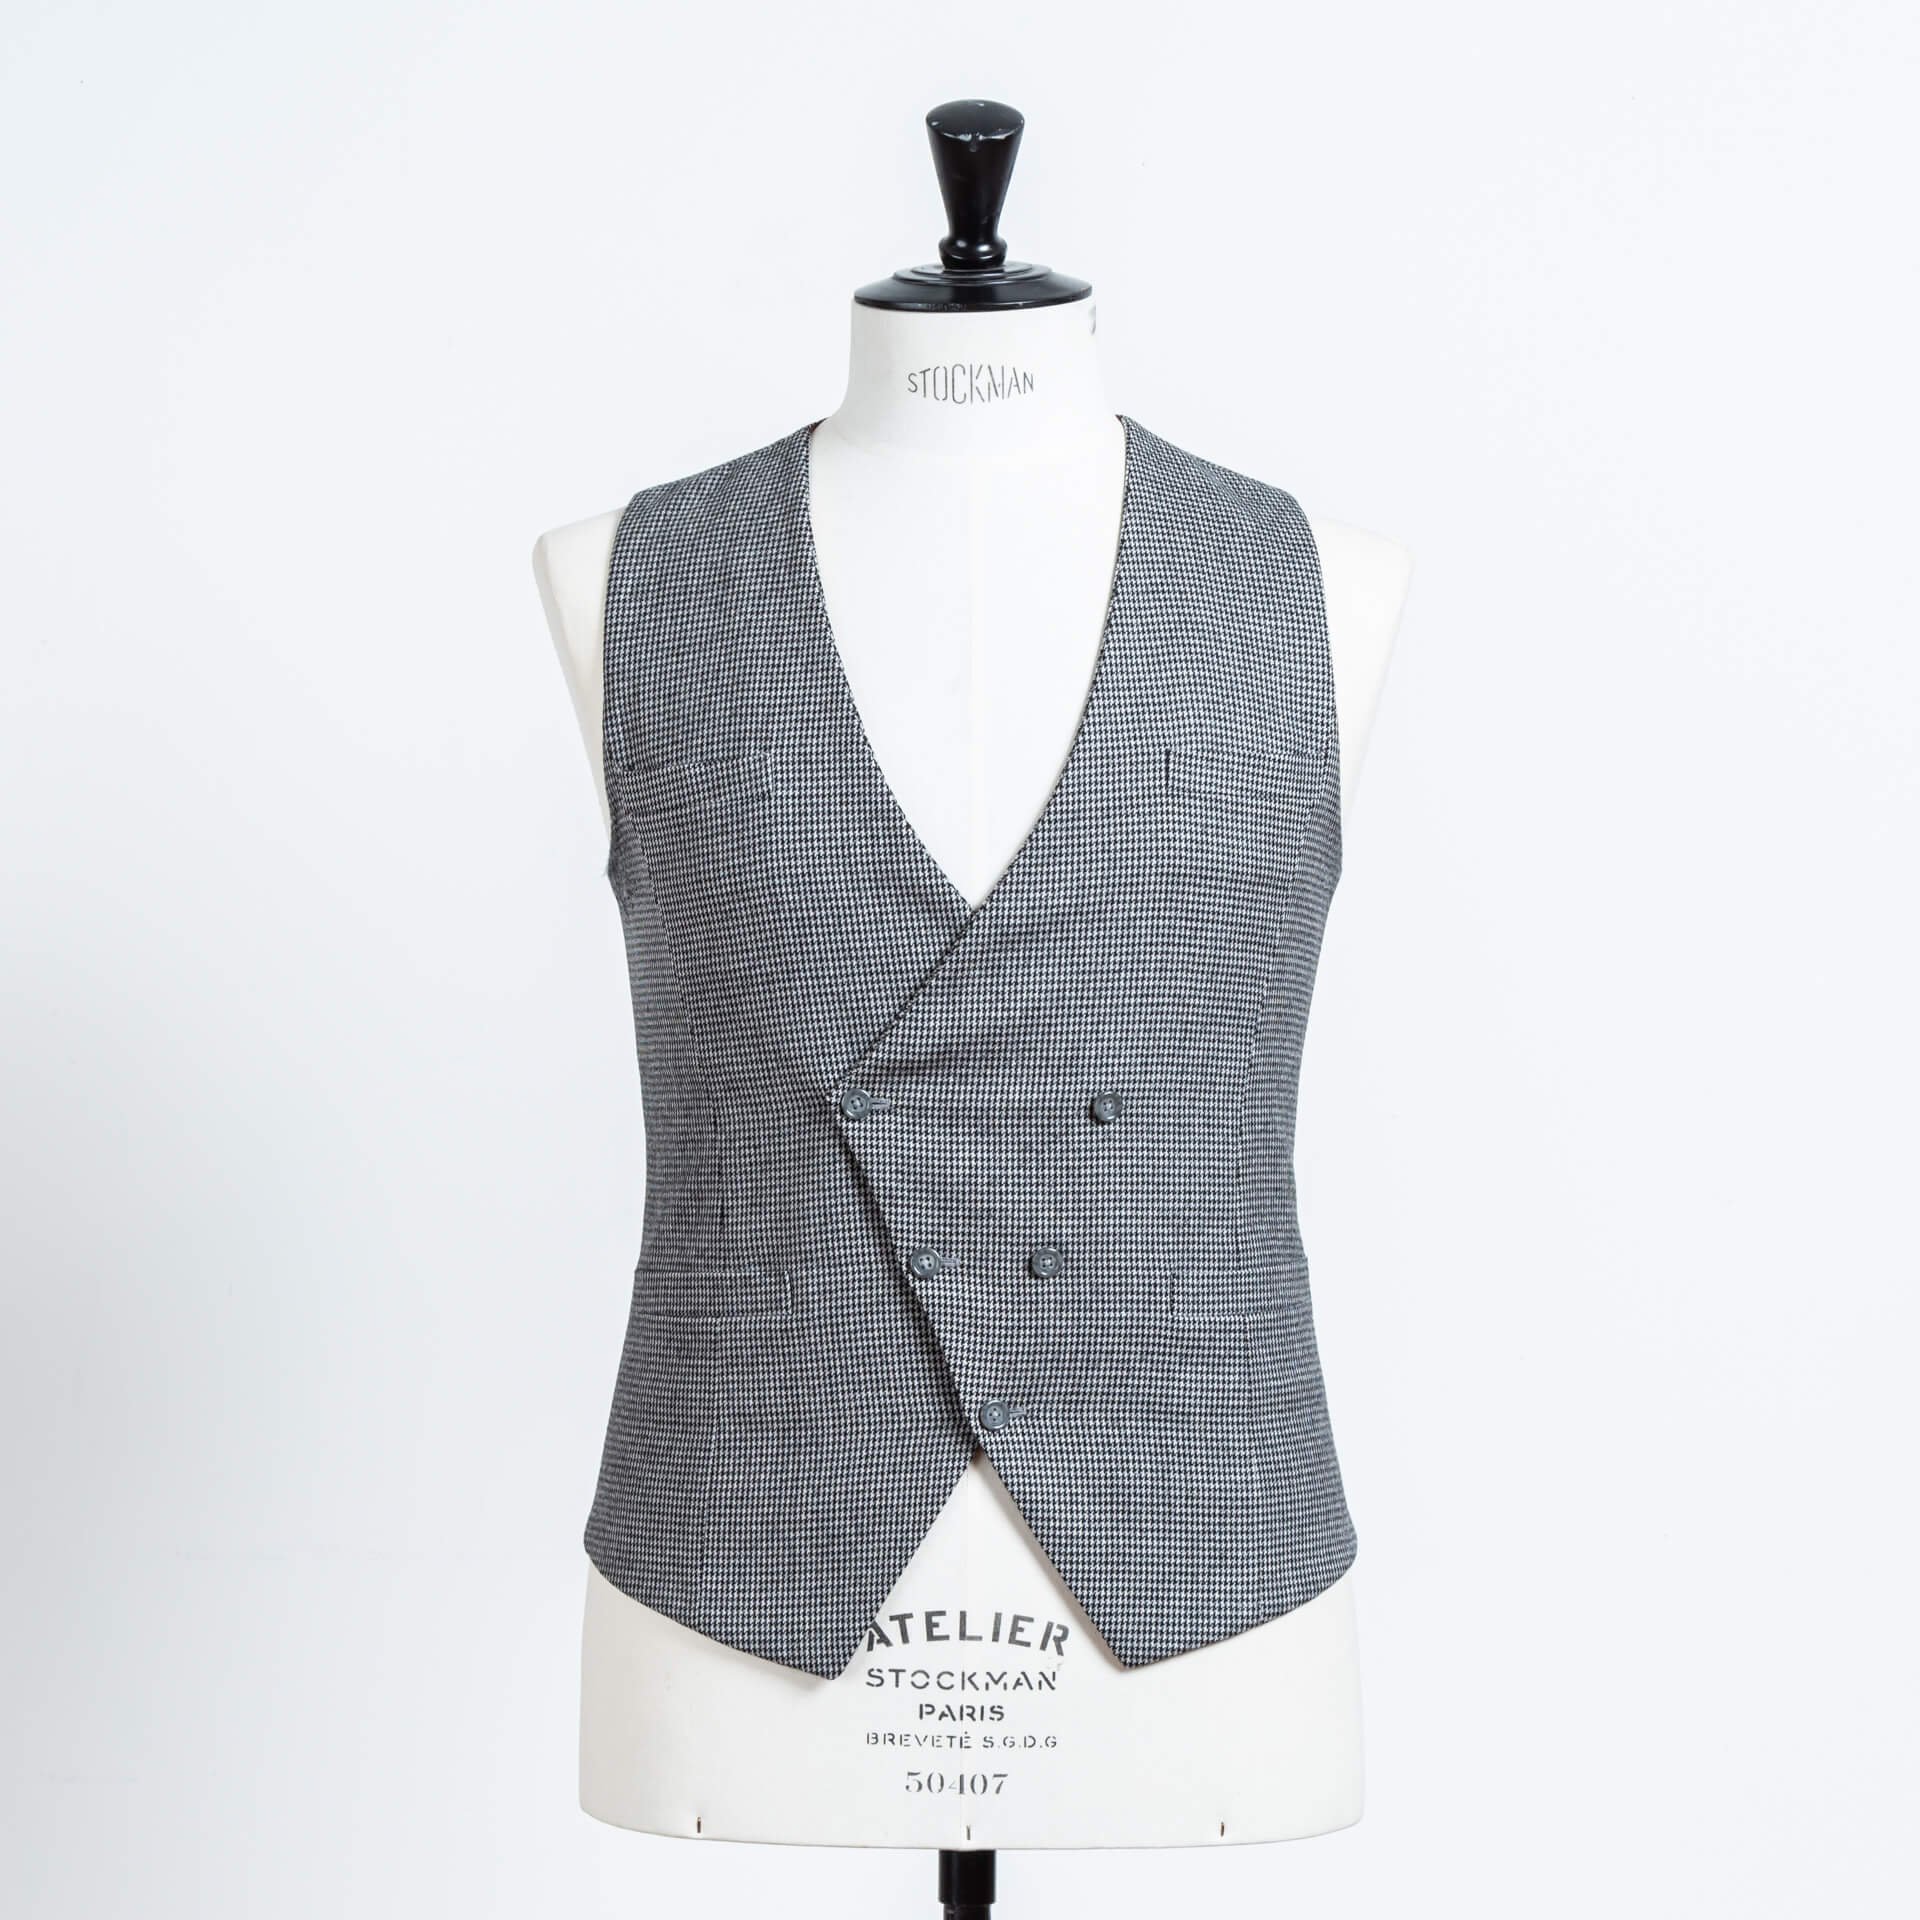 Shadow Stripe Worsted Wool Suit &amp; Pied De Poule Asymmetric Vest.